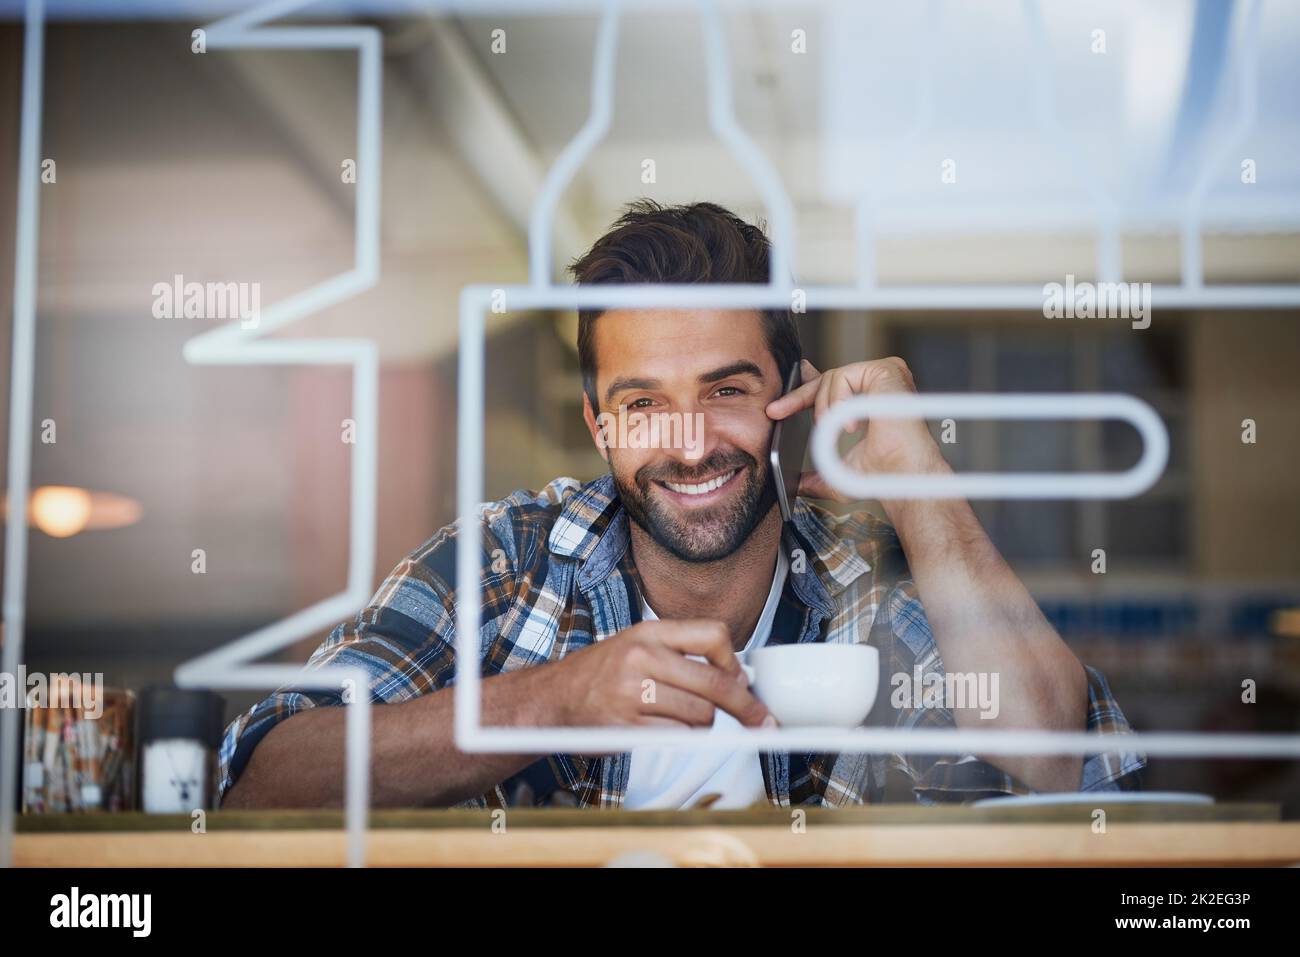 Rimanere in contatto durante la pausa caffè. Ritratto di un giovane felice che risponde al suo cellulare mentre si fa un caffè al suo caffè preferito. Foto Stock